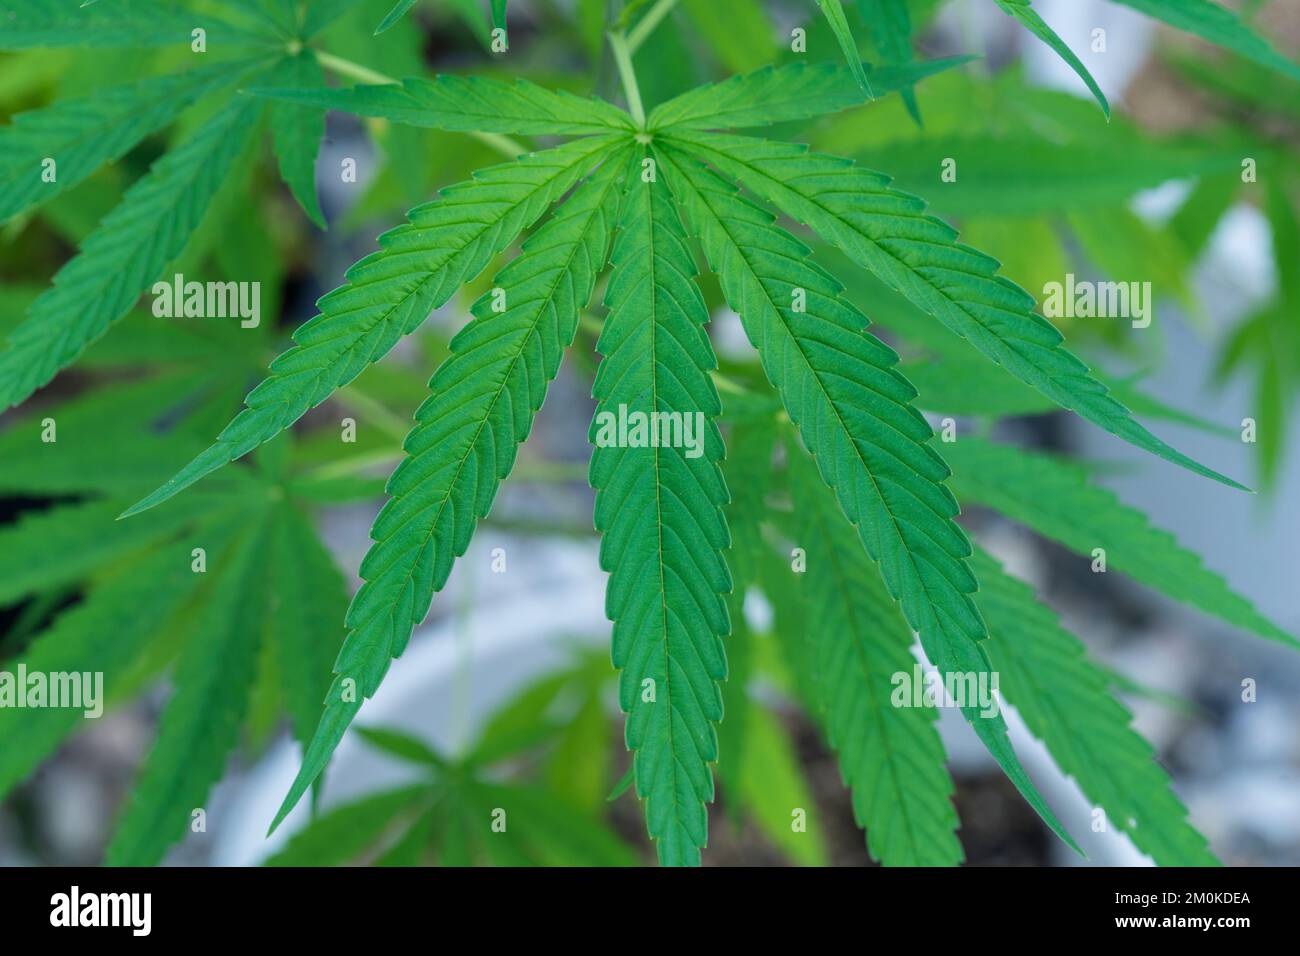 Cannabisblätter vegetatives Wachstum, Grüne Pflanze Nahaufnahme. Grüne Hanfpflanzen mit Stiel, Blätter schwingen in einer sanften Sommerbrise. Stockfoto